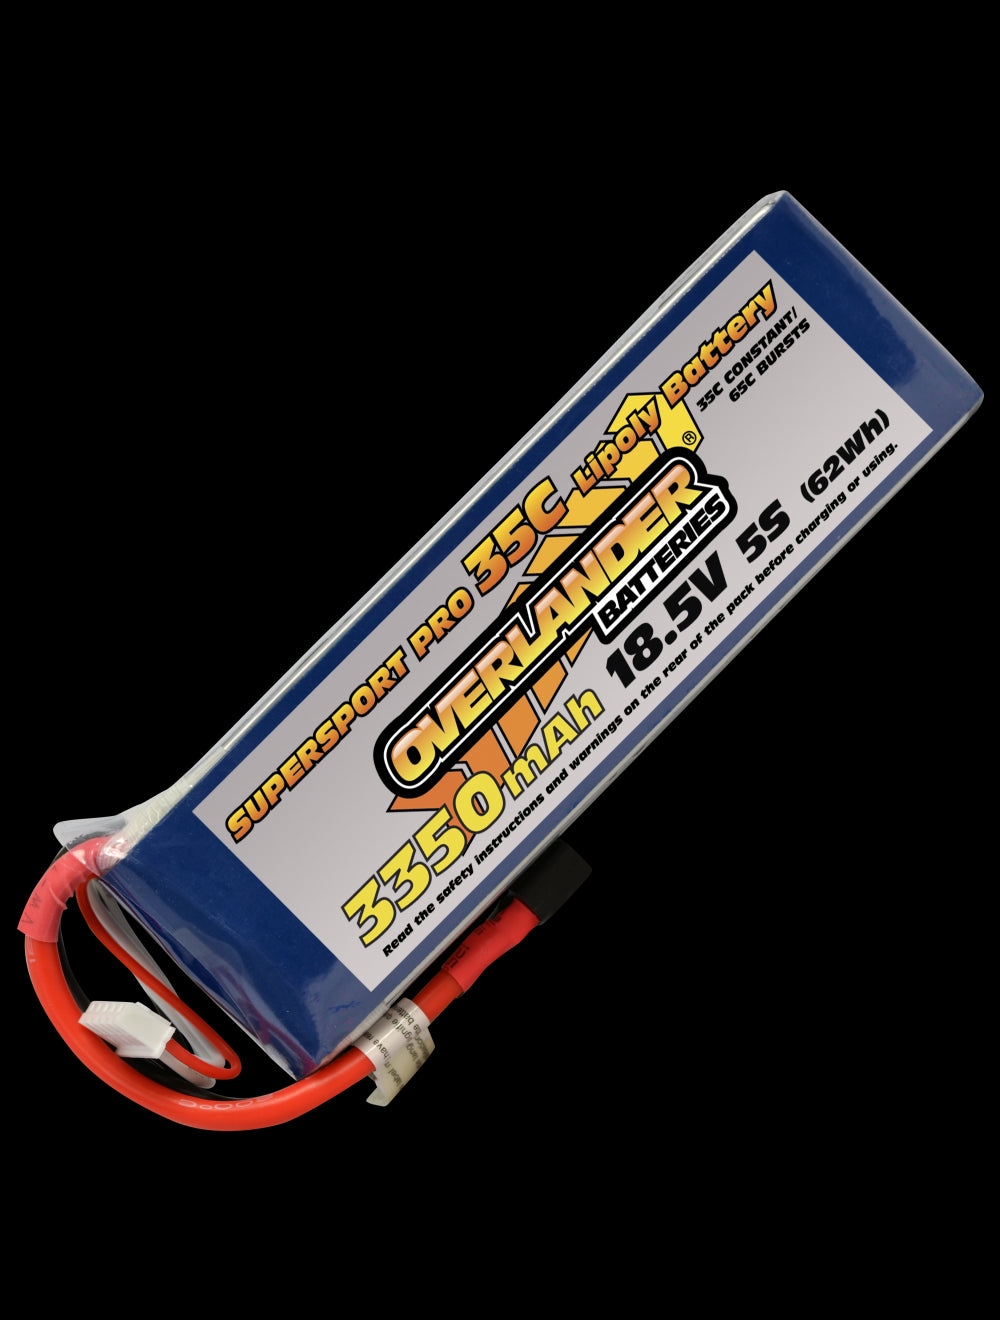 Overlander 3350mAh 18.5V 5S 35C Supersport Pro LiPo Battery - Deans Connector 3123